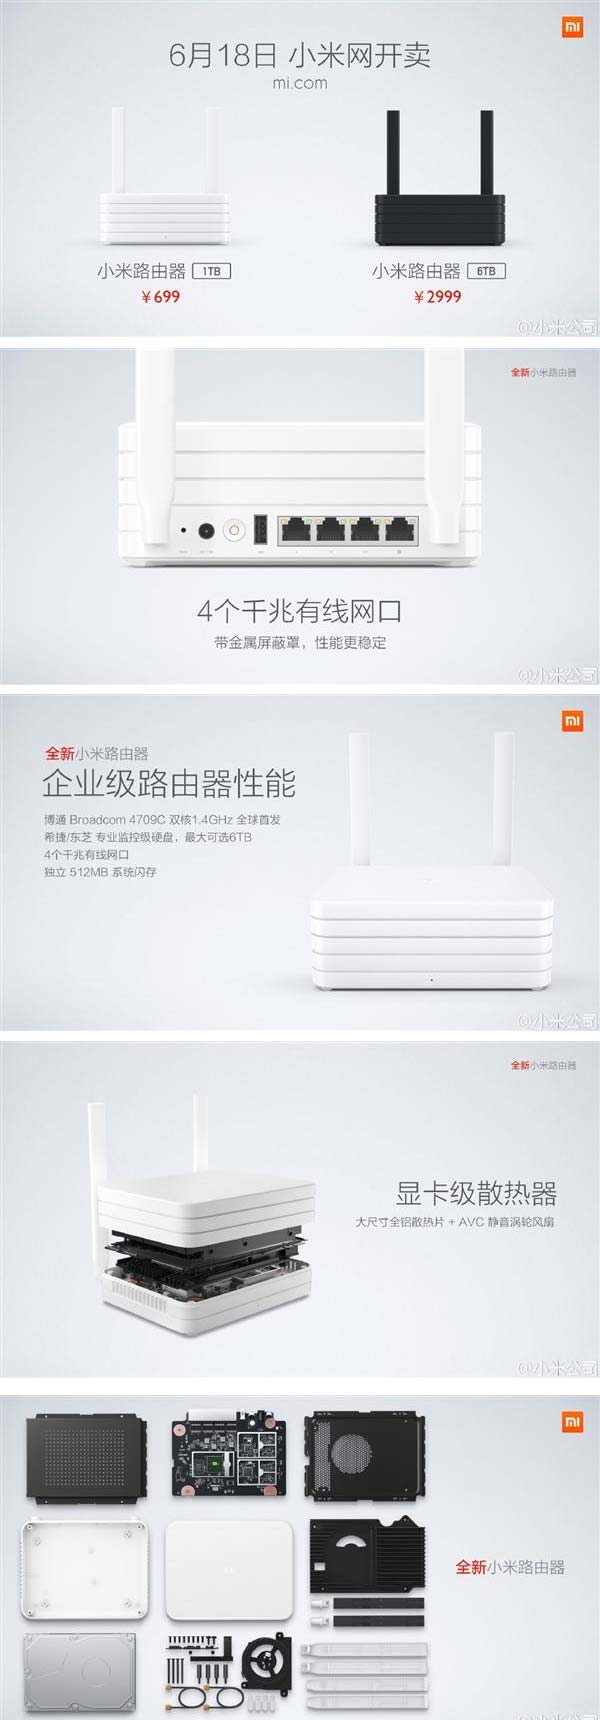 На фото показан роутер Xiaomi Router